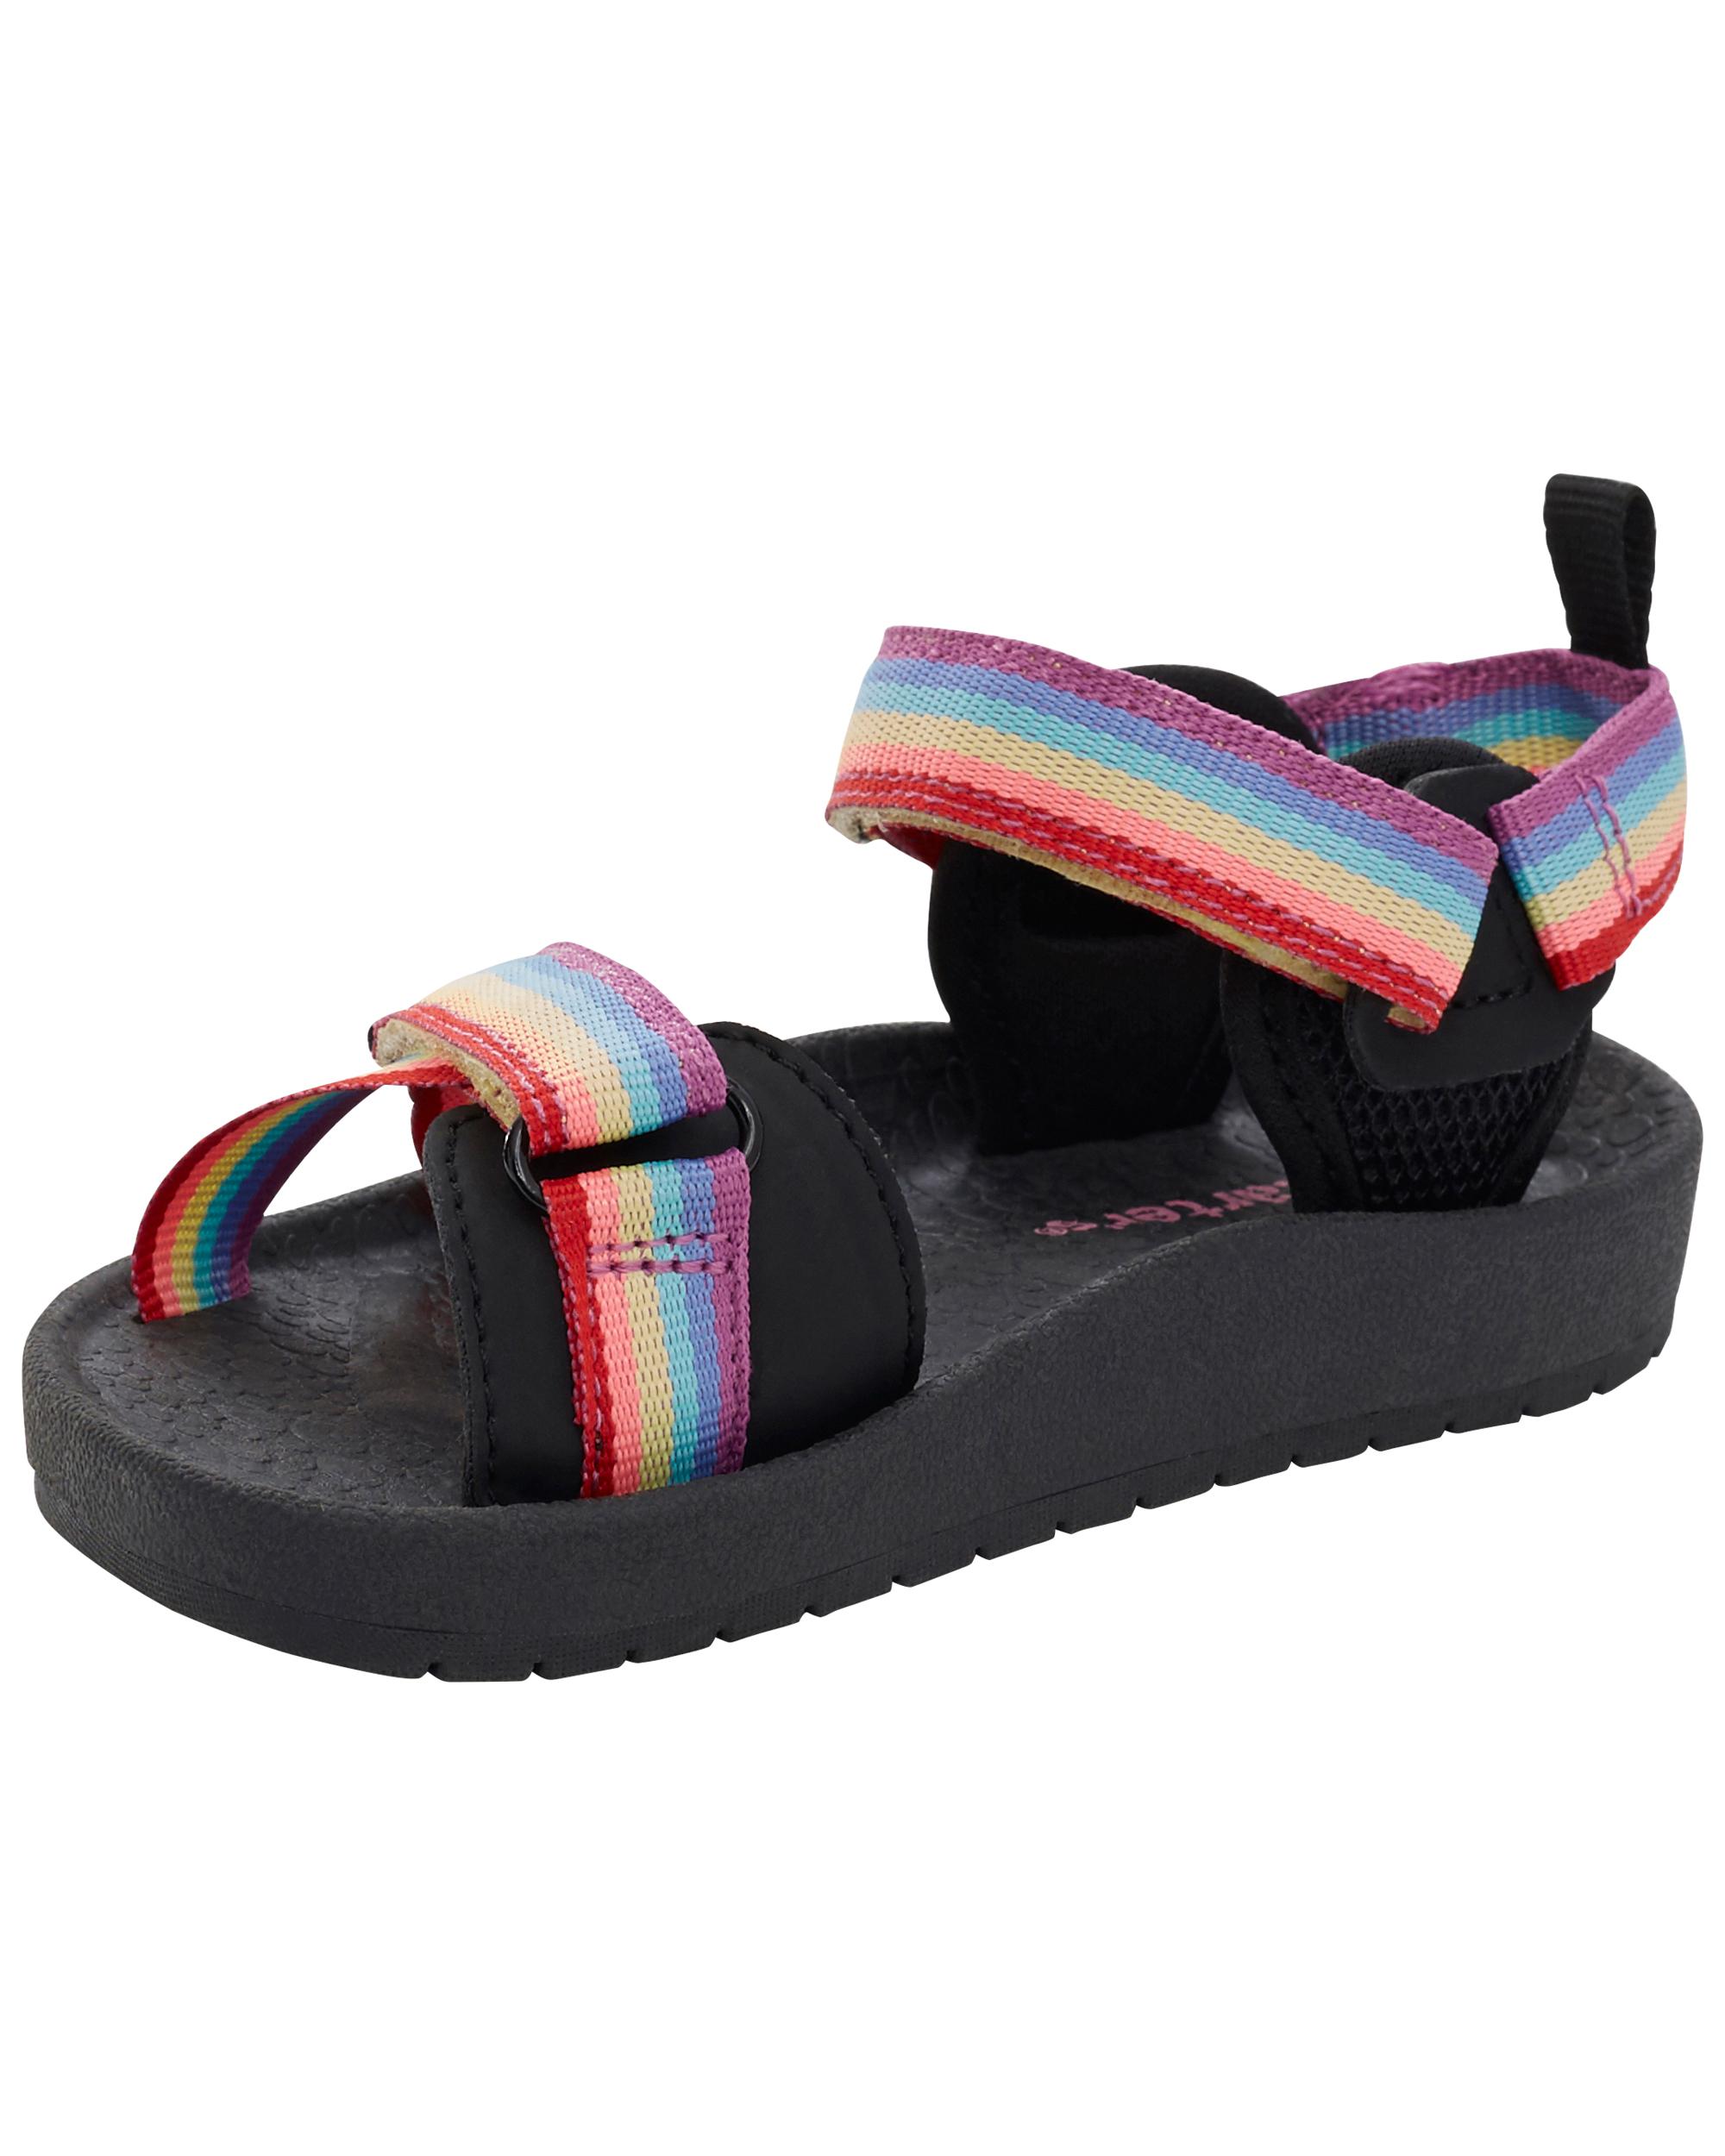 Toddler Rainbow Hook & Loop Sandals